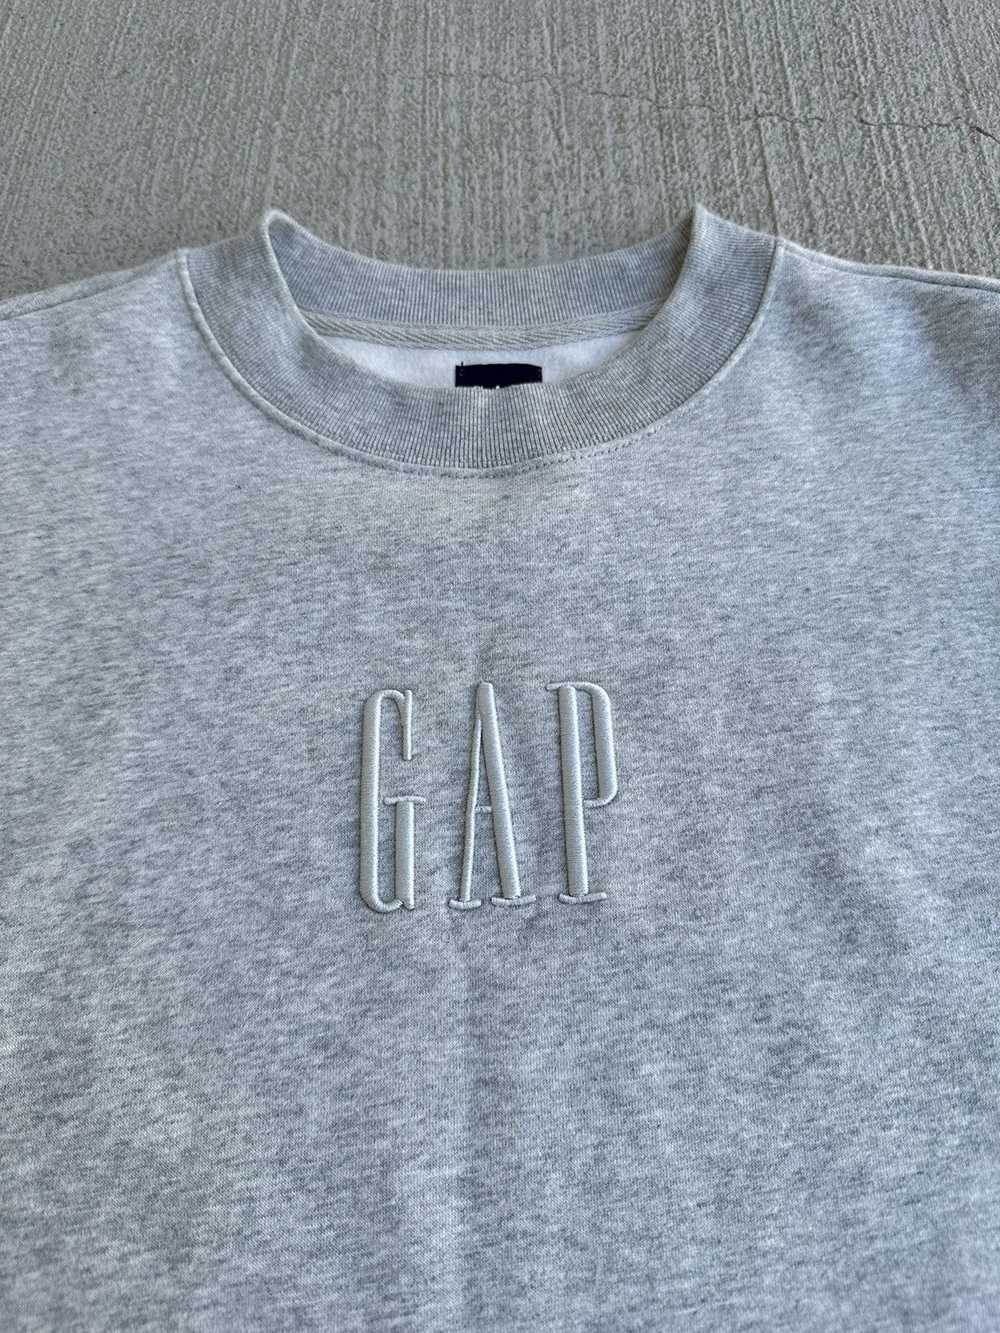 Gap × Streetwear × Vintage Gap Sweatshirt - image 3